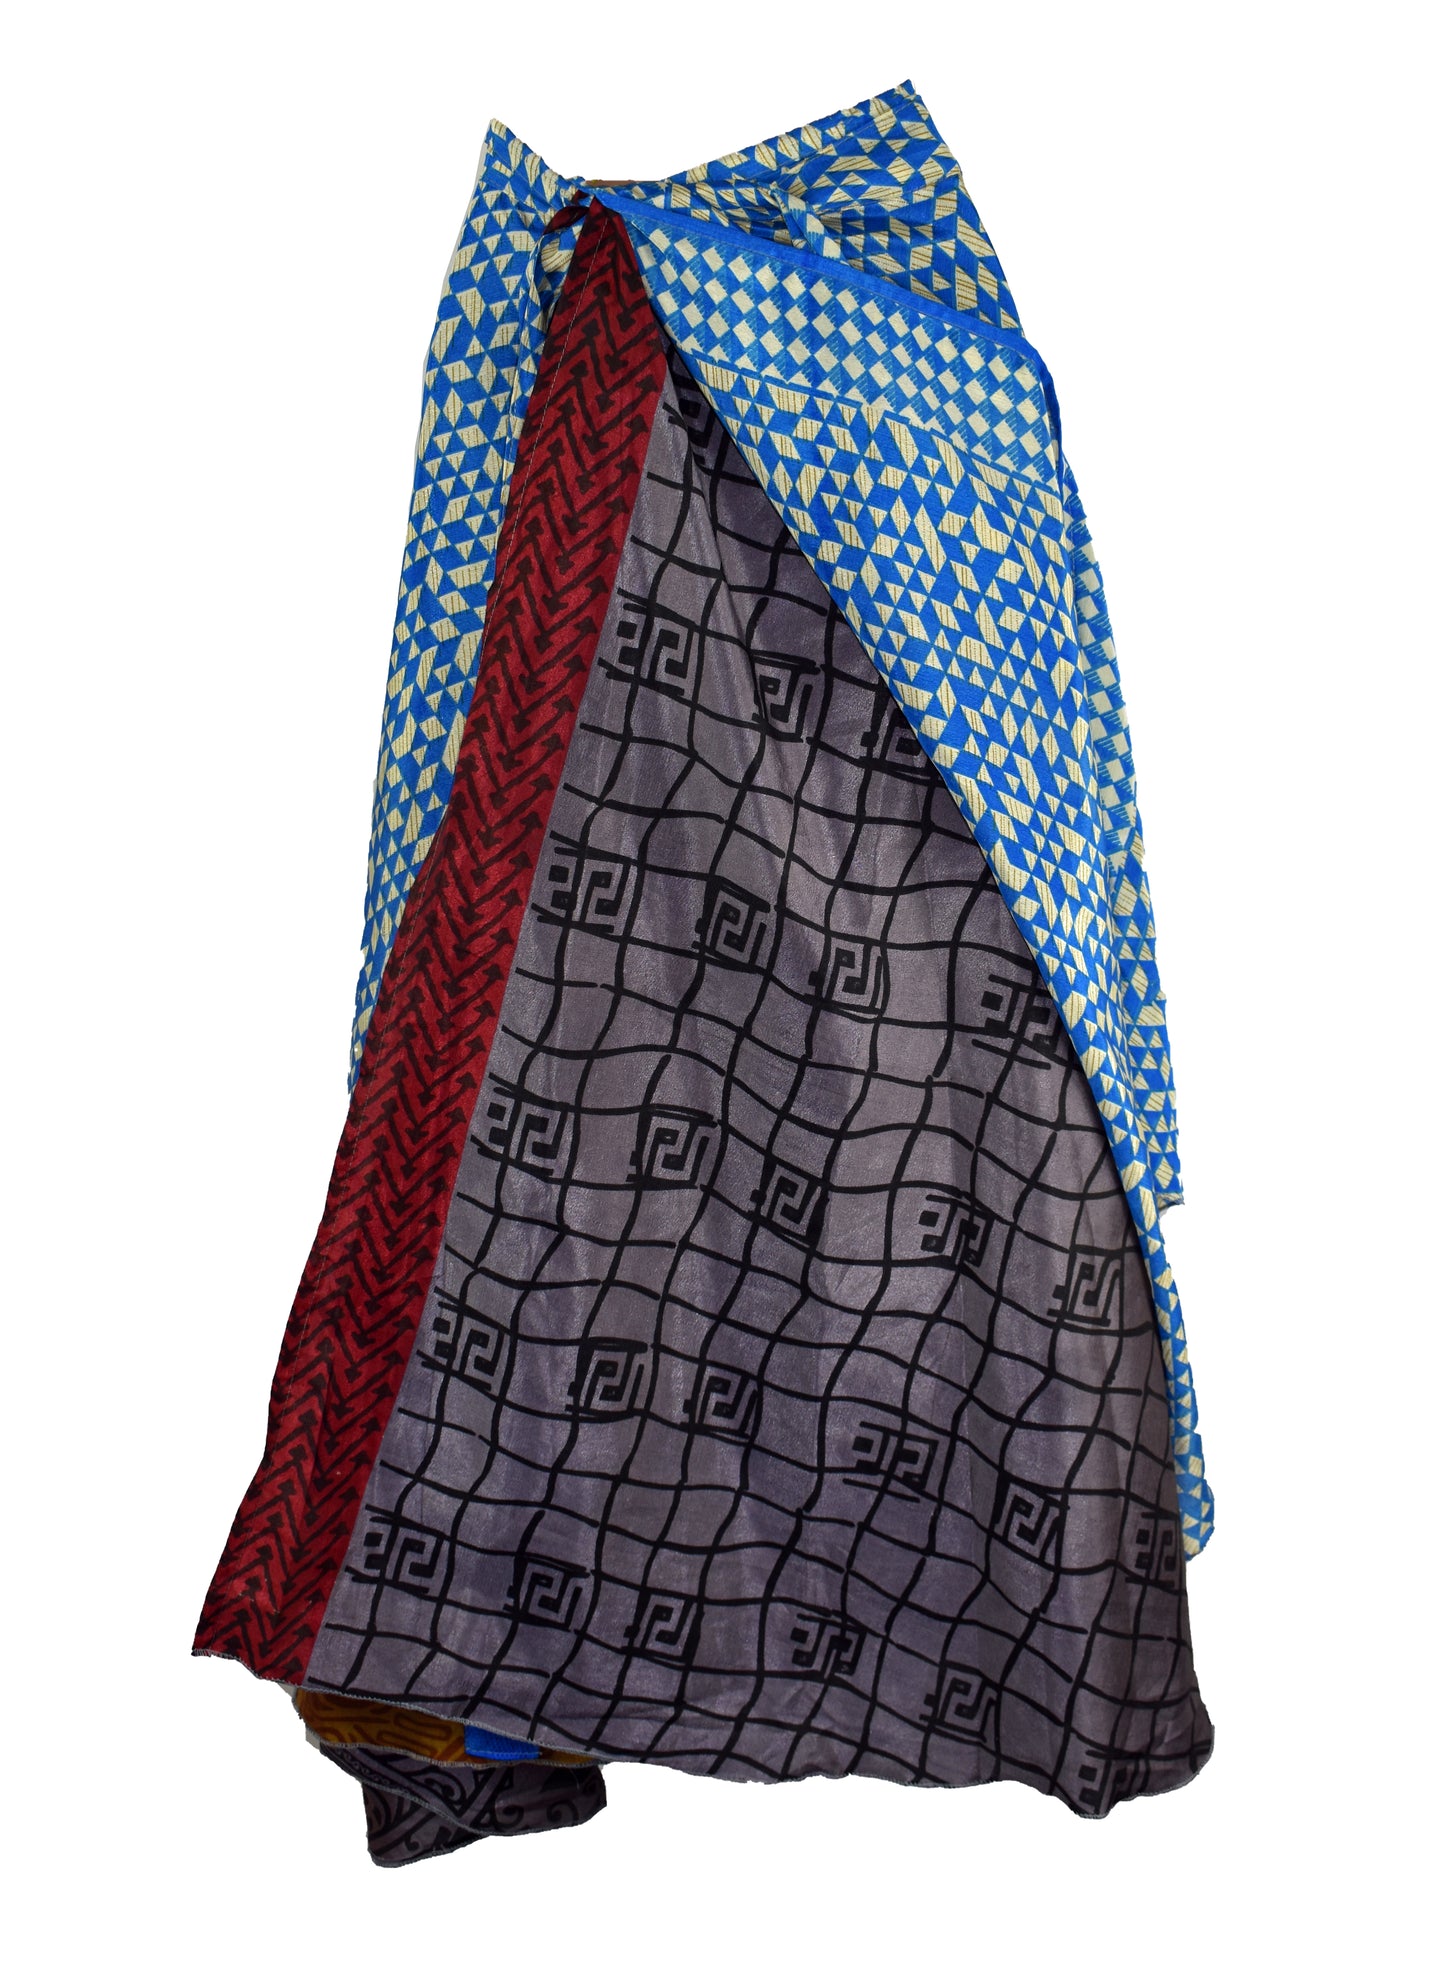 Sari Silk Wrap Skirt XL 66"